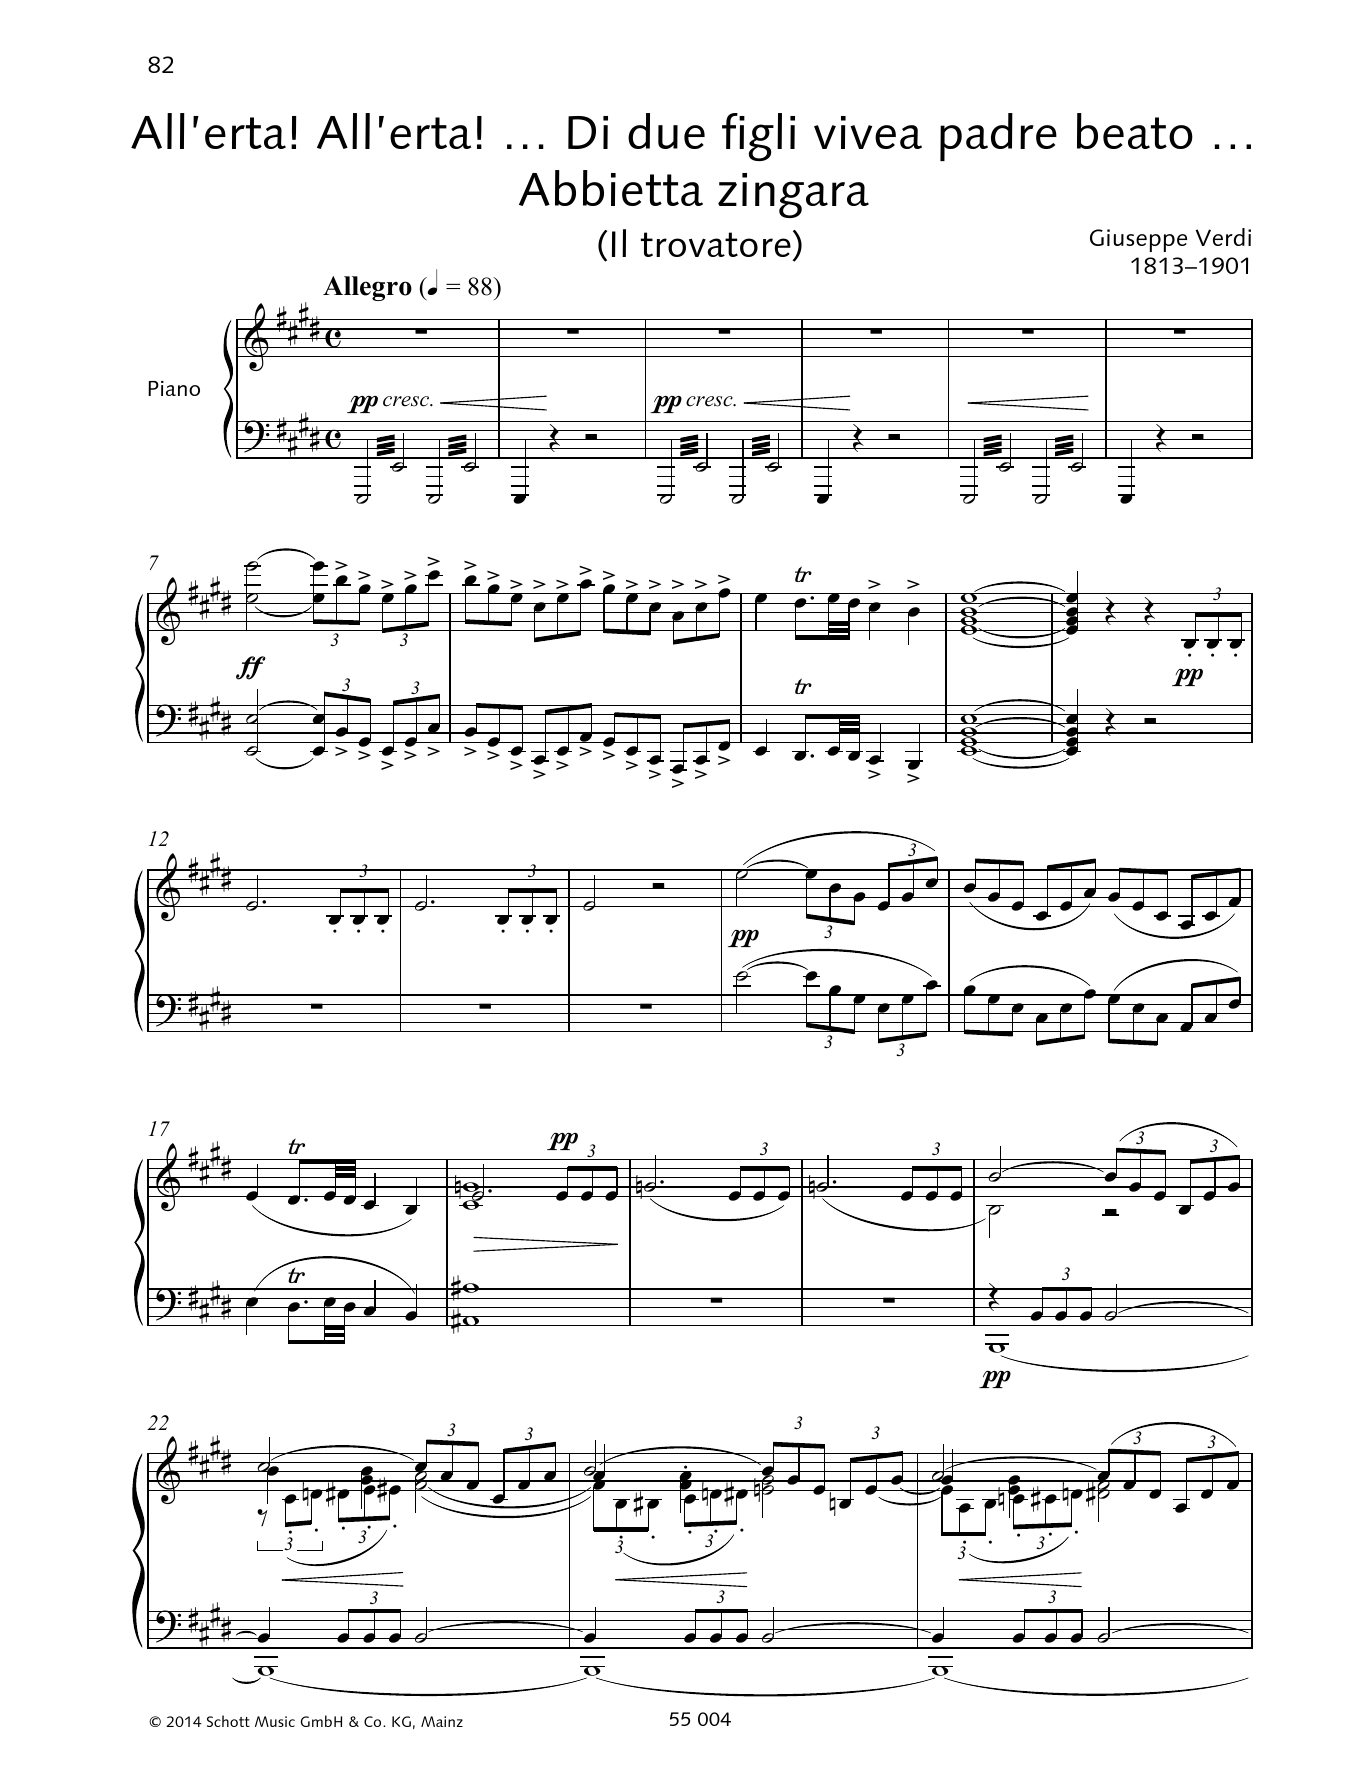 Giuseppe Verdi All'erta! All'erta!... Di due figli vivea padre beato... Abbietta zingara Sheet Music Notes & Chords for Piano & Vocal - Download or Print PDF